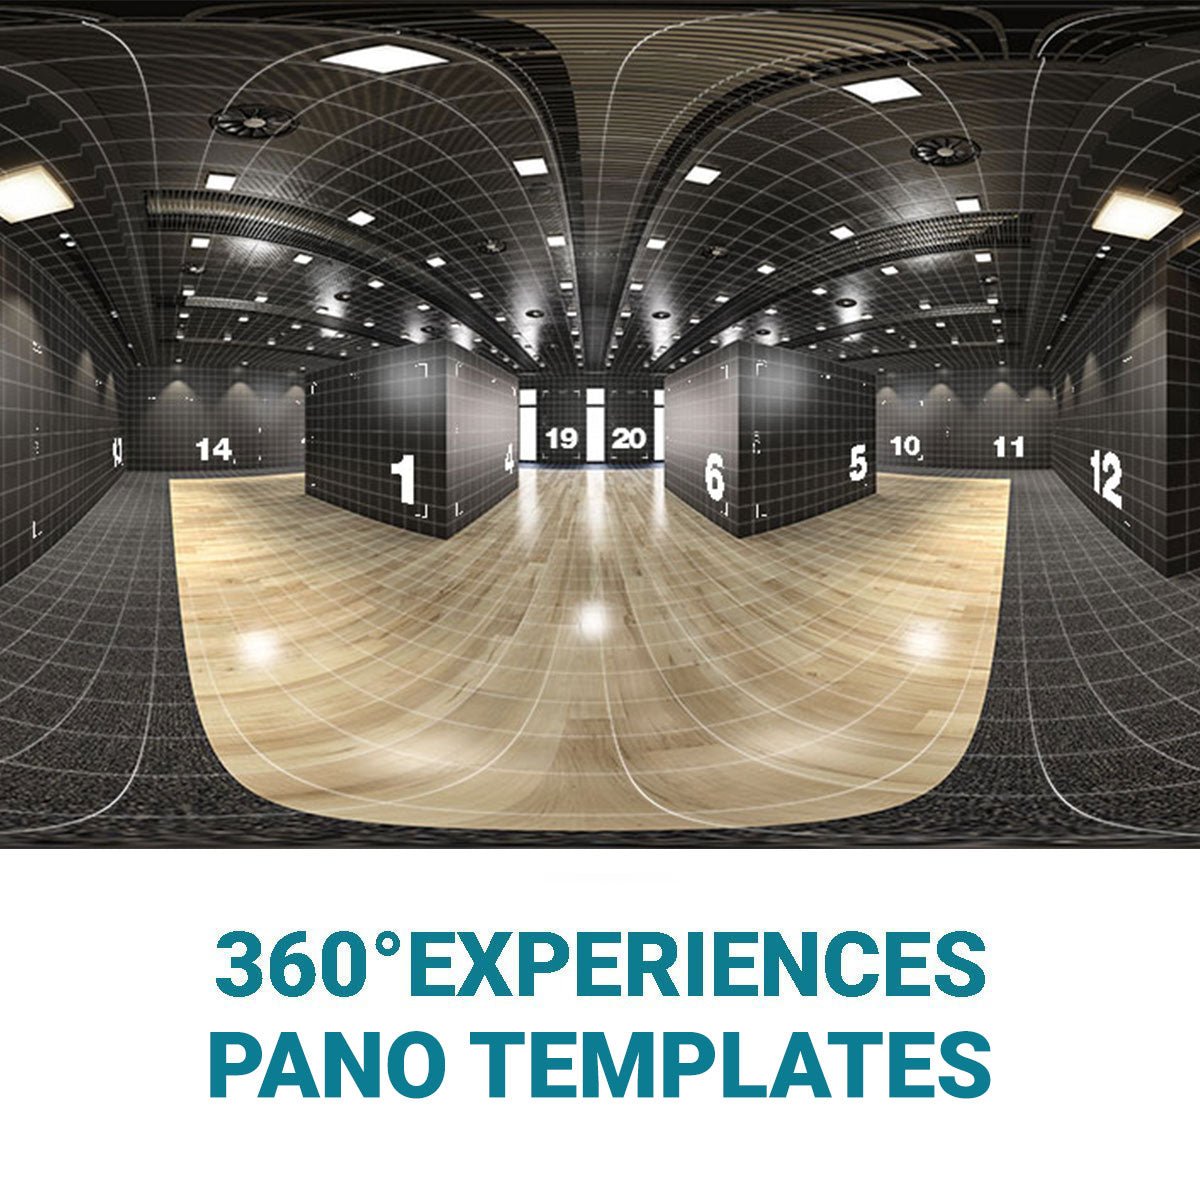 360° EXPERIENCES - VIRTUAL TOUR MIT TEMPLATES - MESH IMAGES BERLIN MESH IMAGES BERLIN 360° Experiences - 360° Virtual Tour Creation